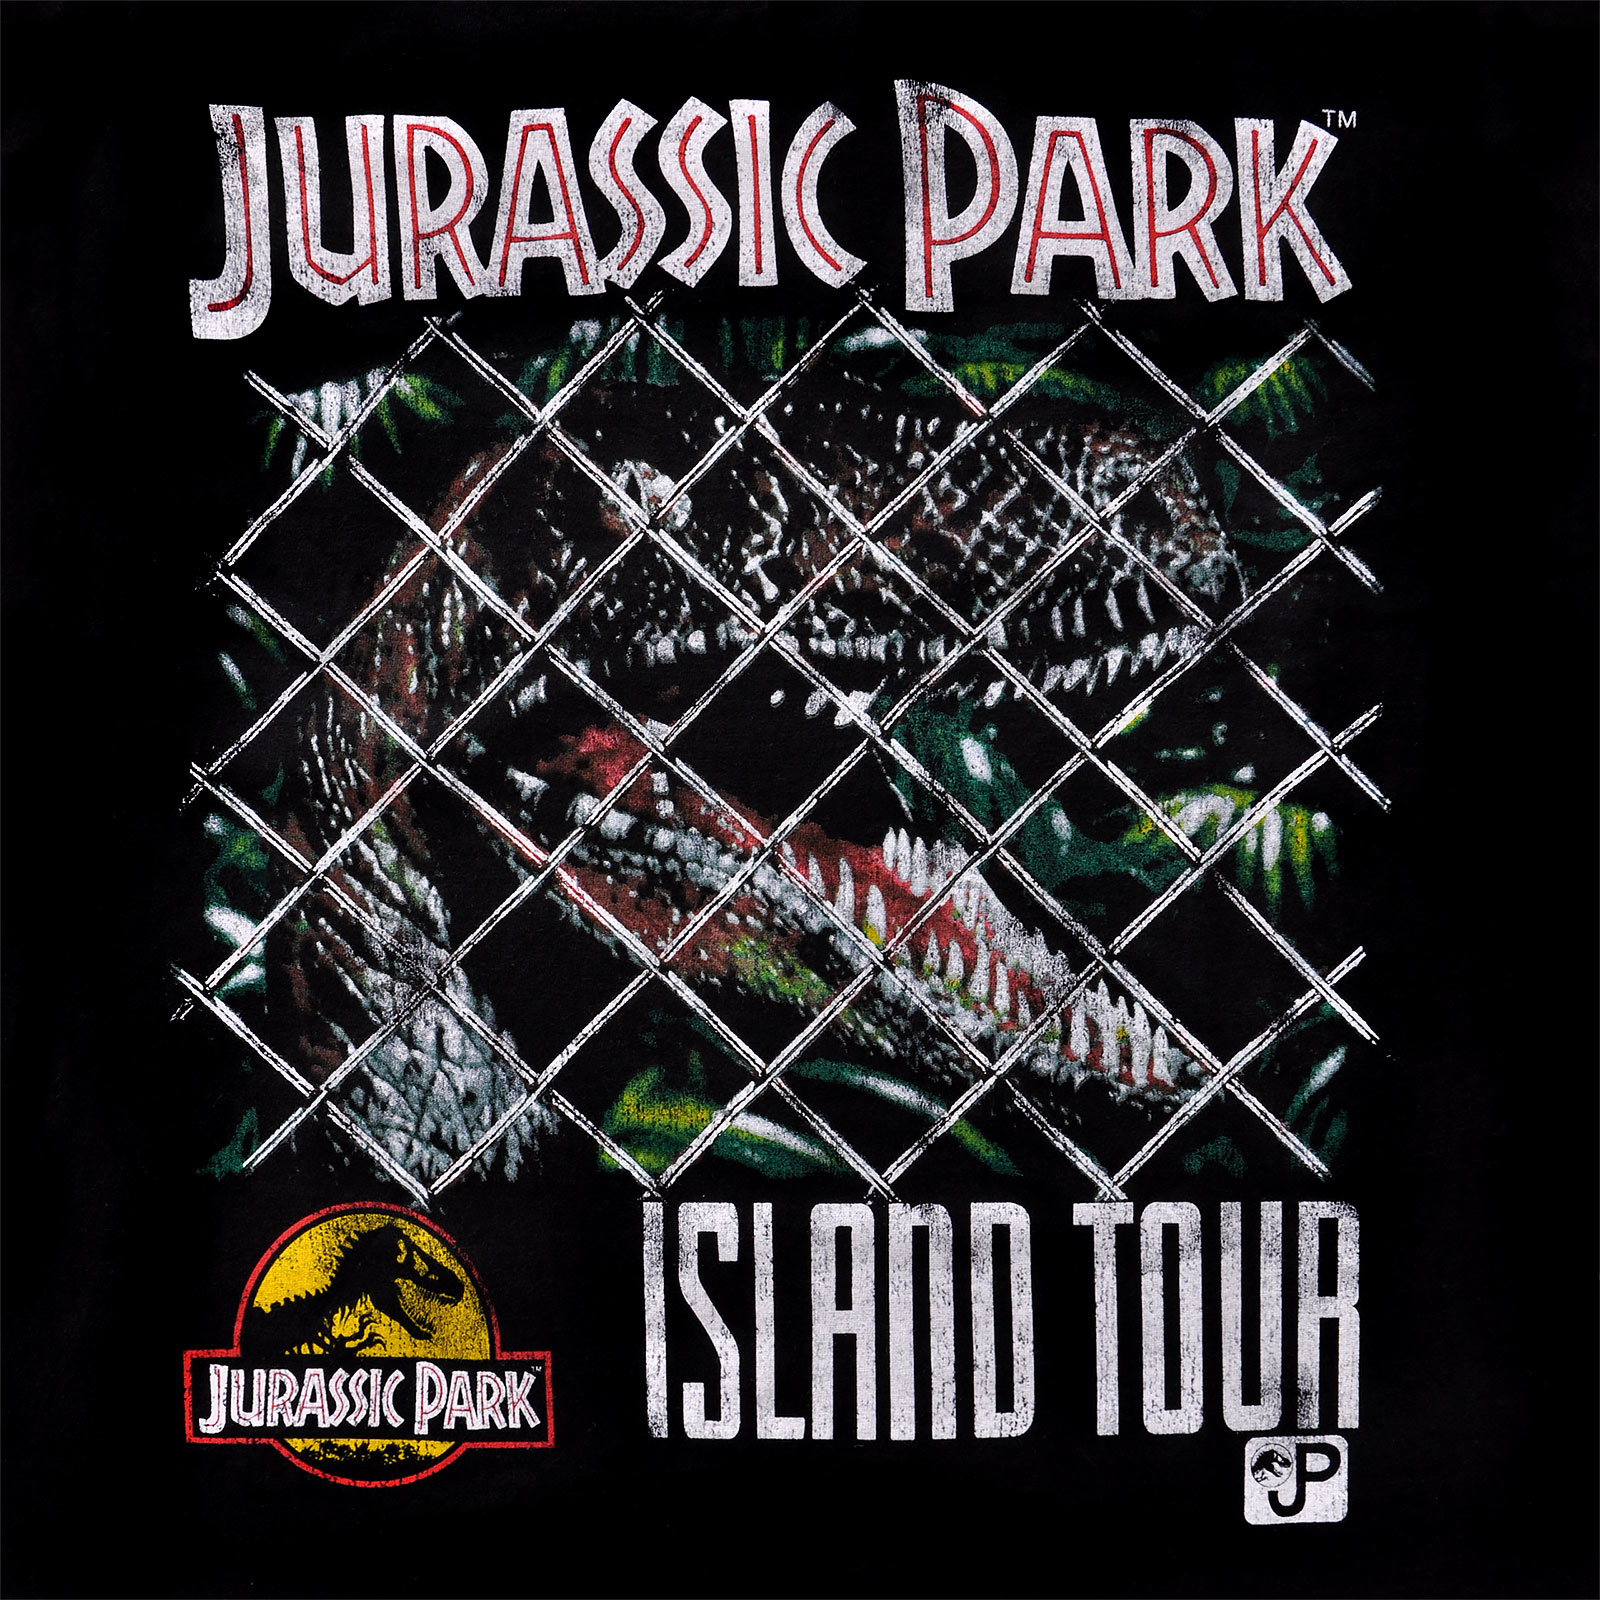 Jurassic Park - Island Tour T-Shirt Zwart